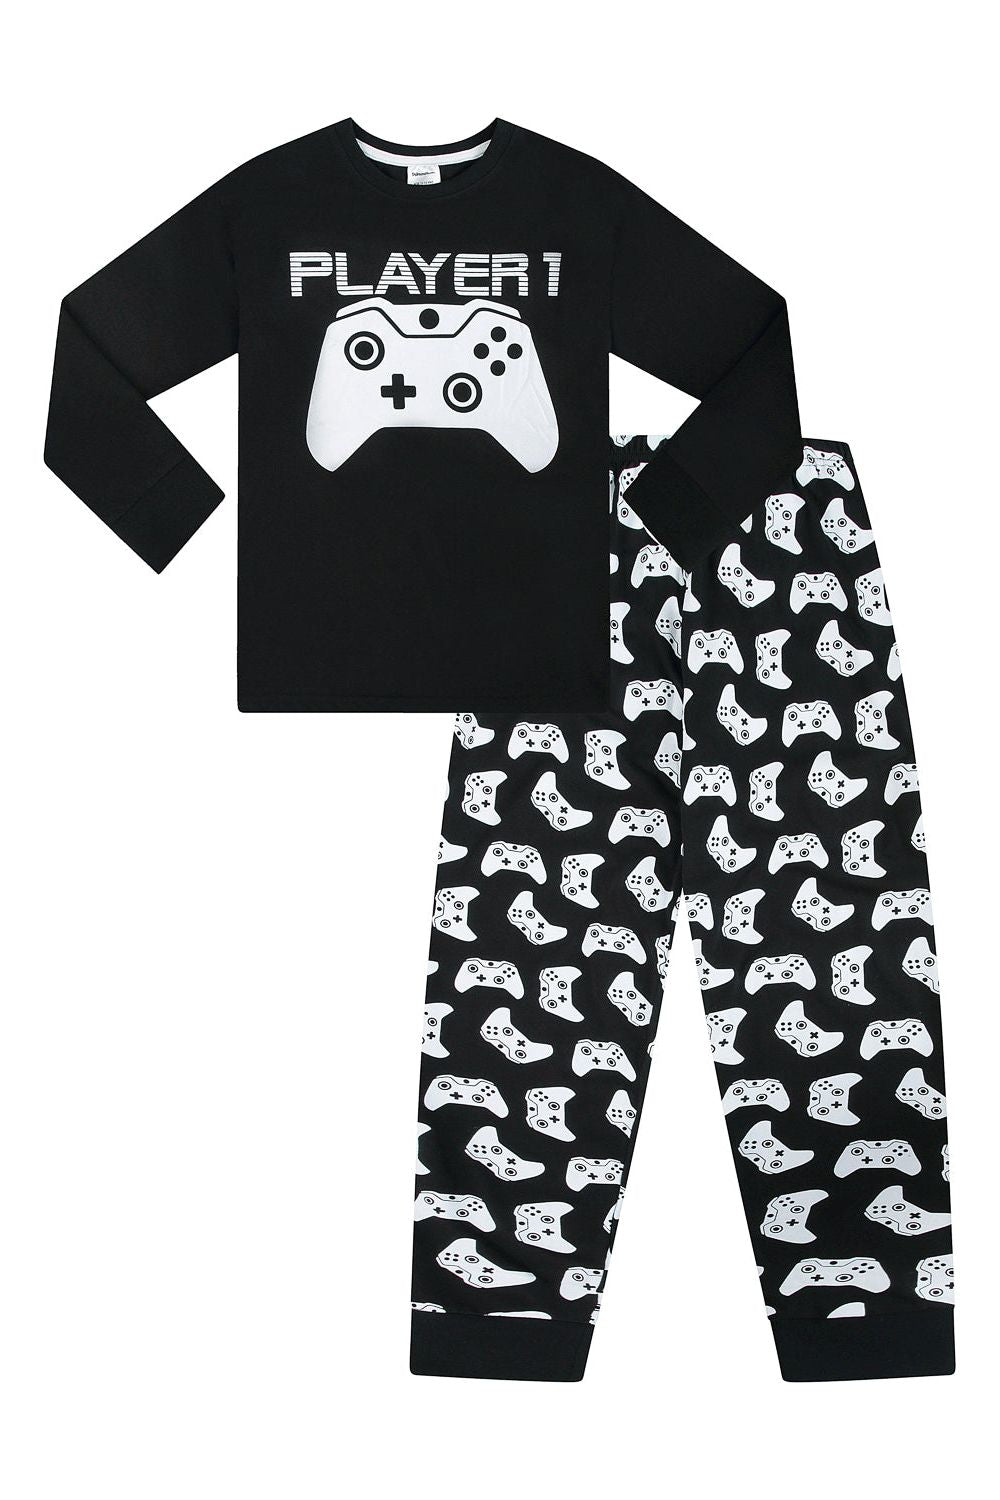 Player 1 Gaming Controller Long Pyjamas - Pyjamas.com